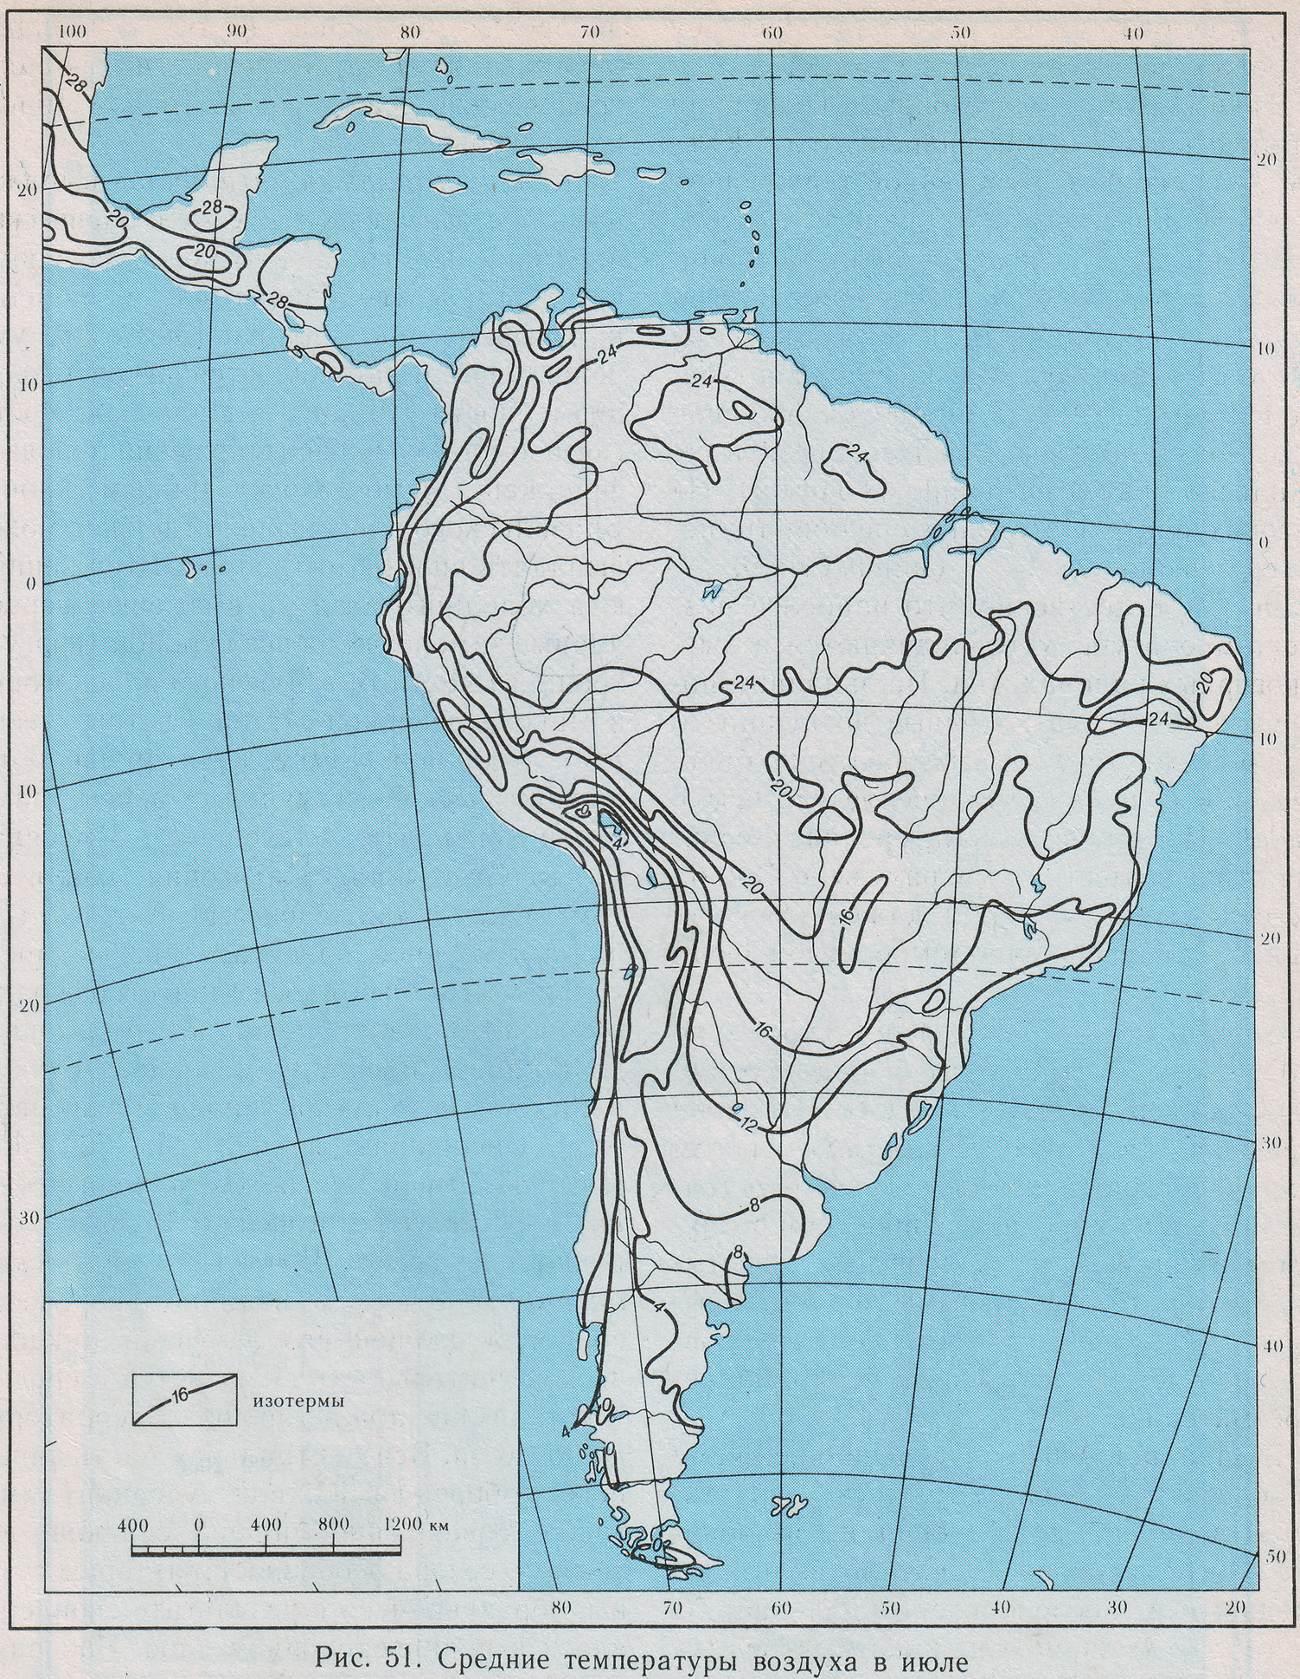 Климатическая контурная карта южной америки. Контурная крата Южной Америки. Политическая контурная карта Южной Америки 7 класс география. Физическая контурная карта Южной Америки. Пустая физическая карта Южной Америки.